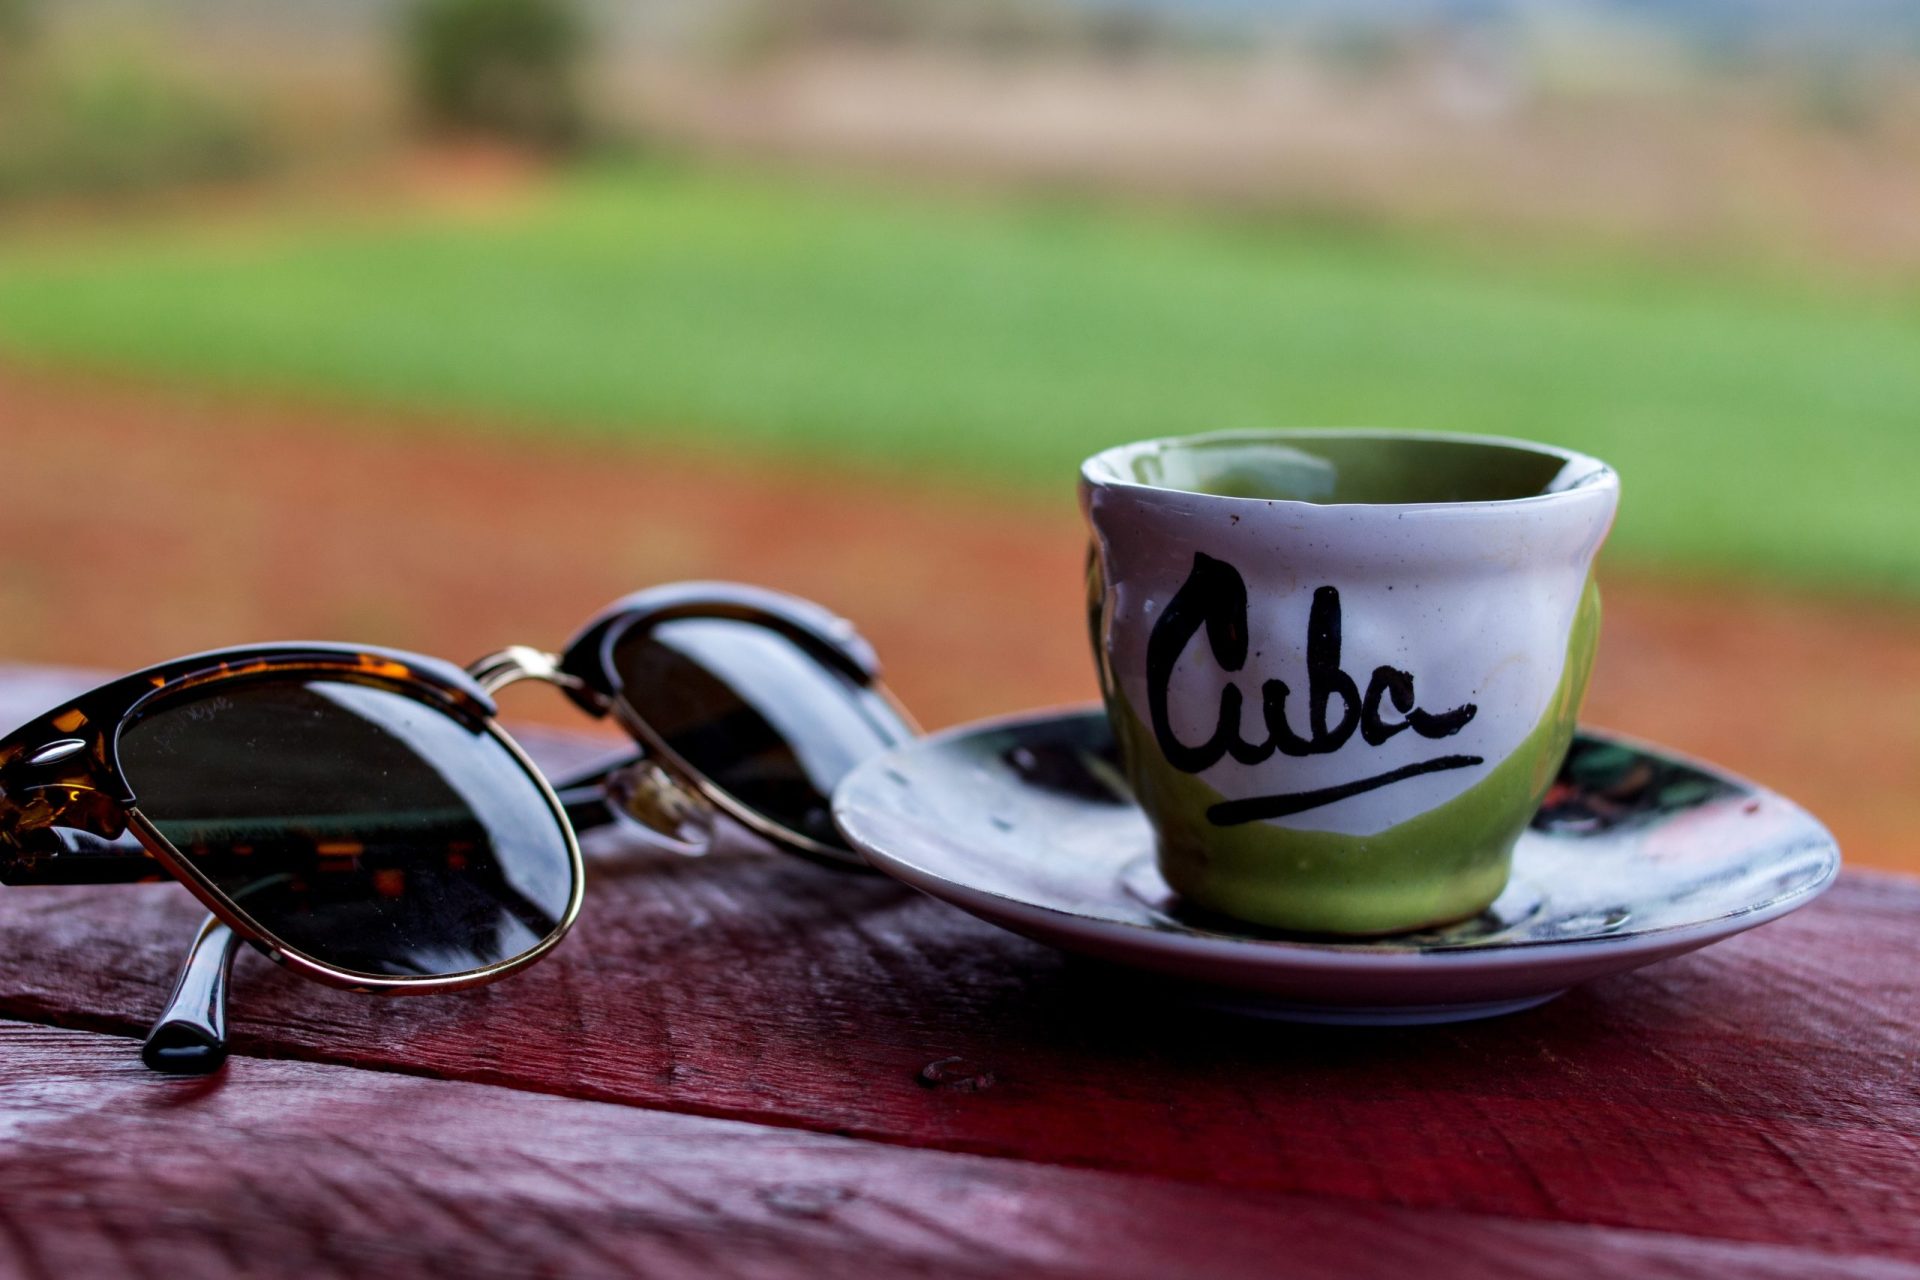 coffee culture in cuba